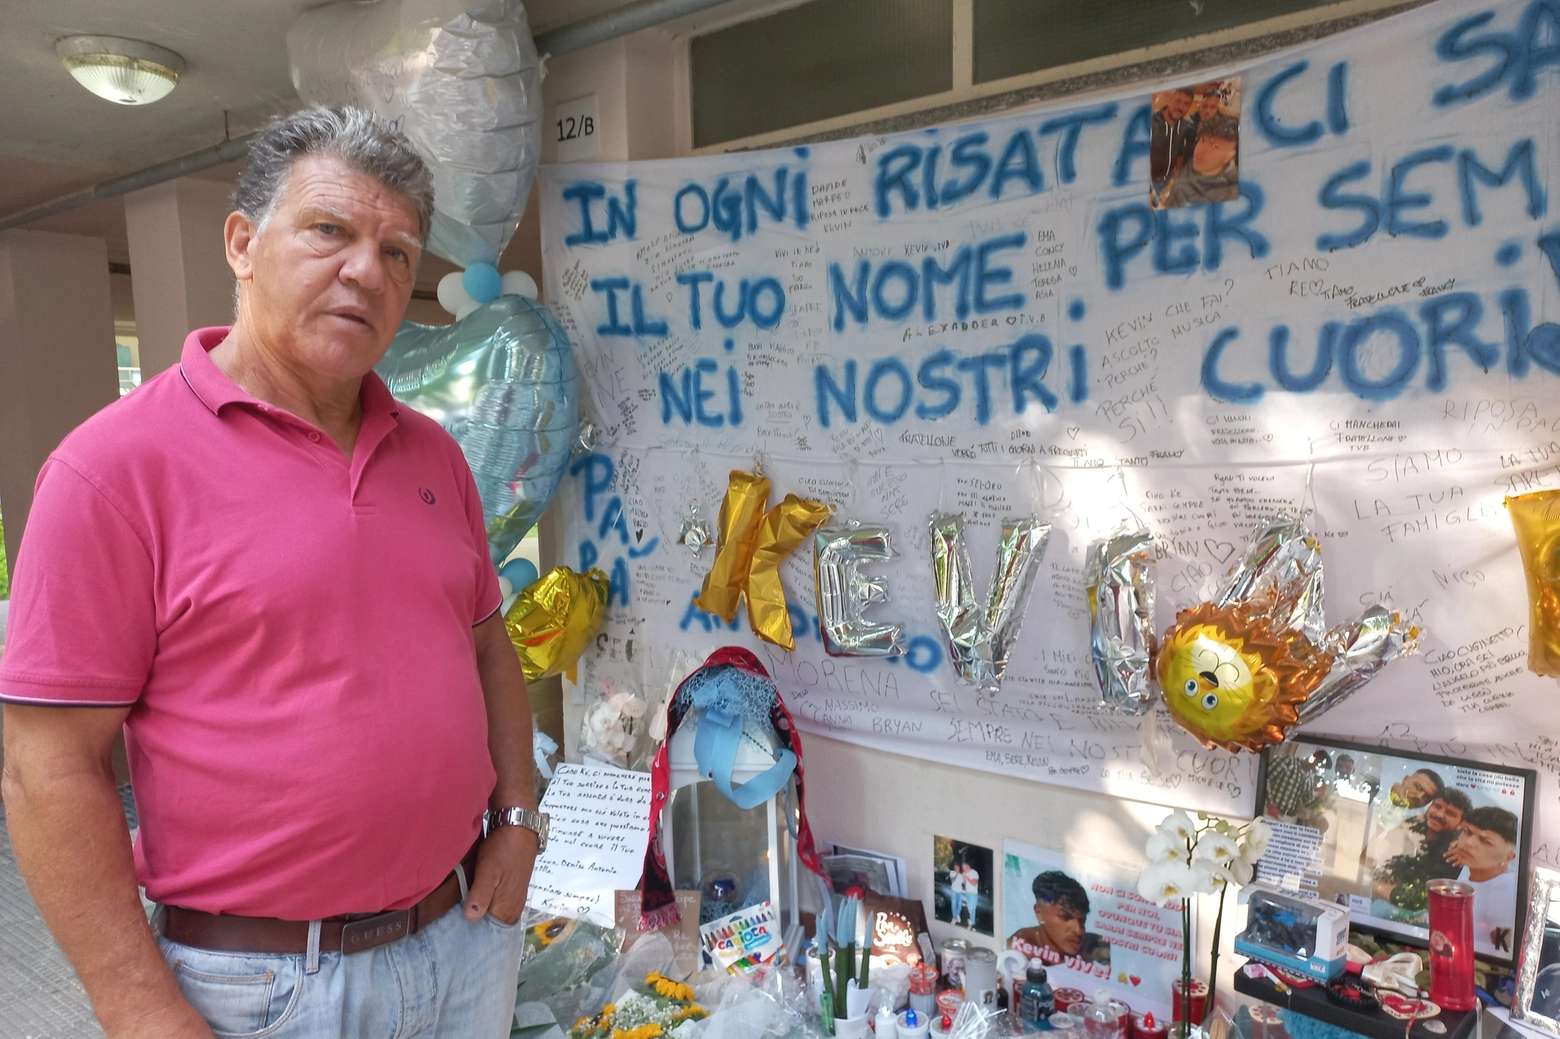 Giovanni Caporalello, zio di Kevin Laganà, nel porticato di casa affollato di fiori e ricordi per il nipote morto nella strage di Brandizzo (Torino)